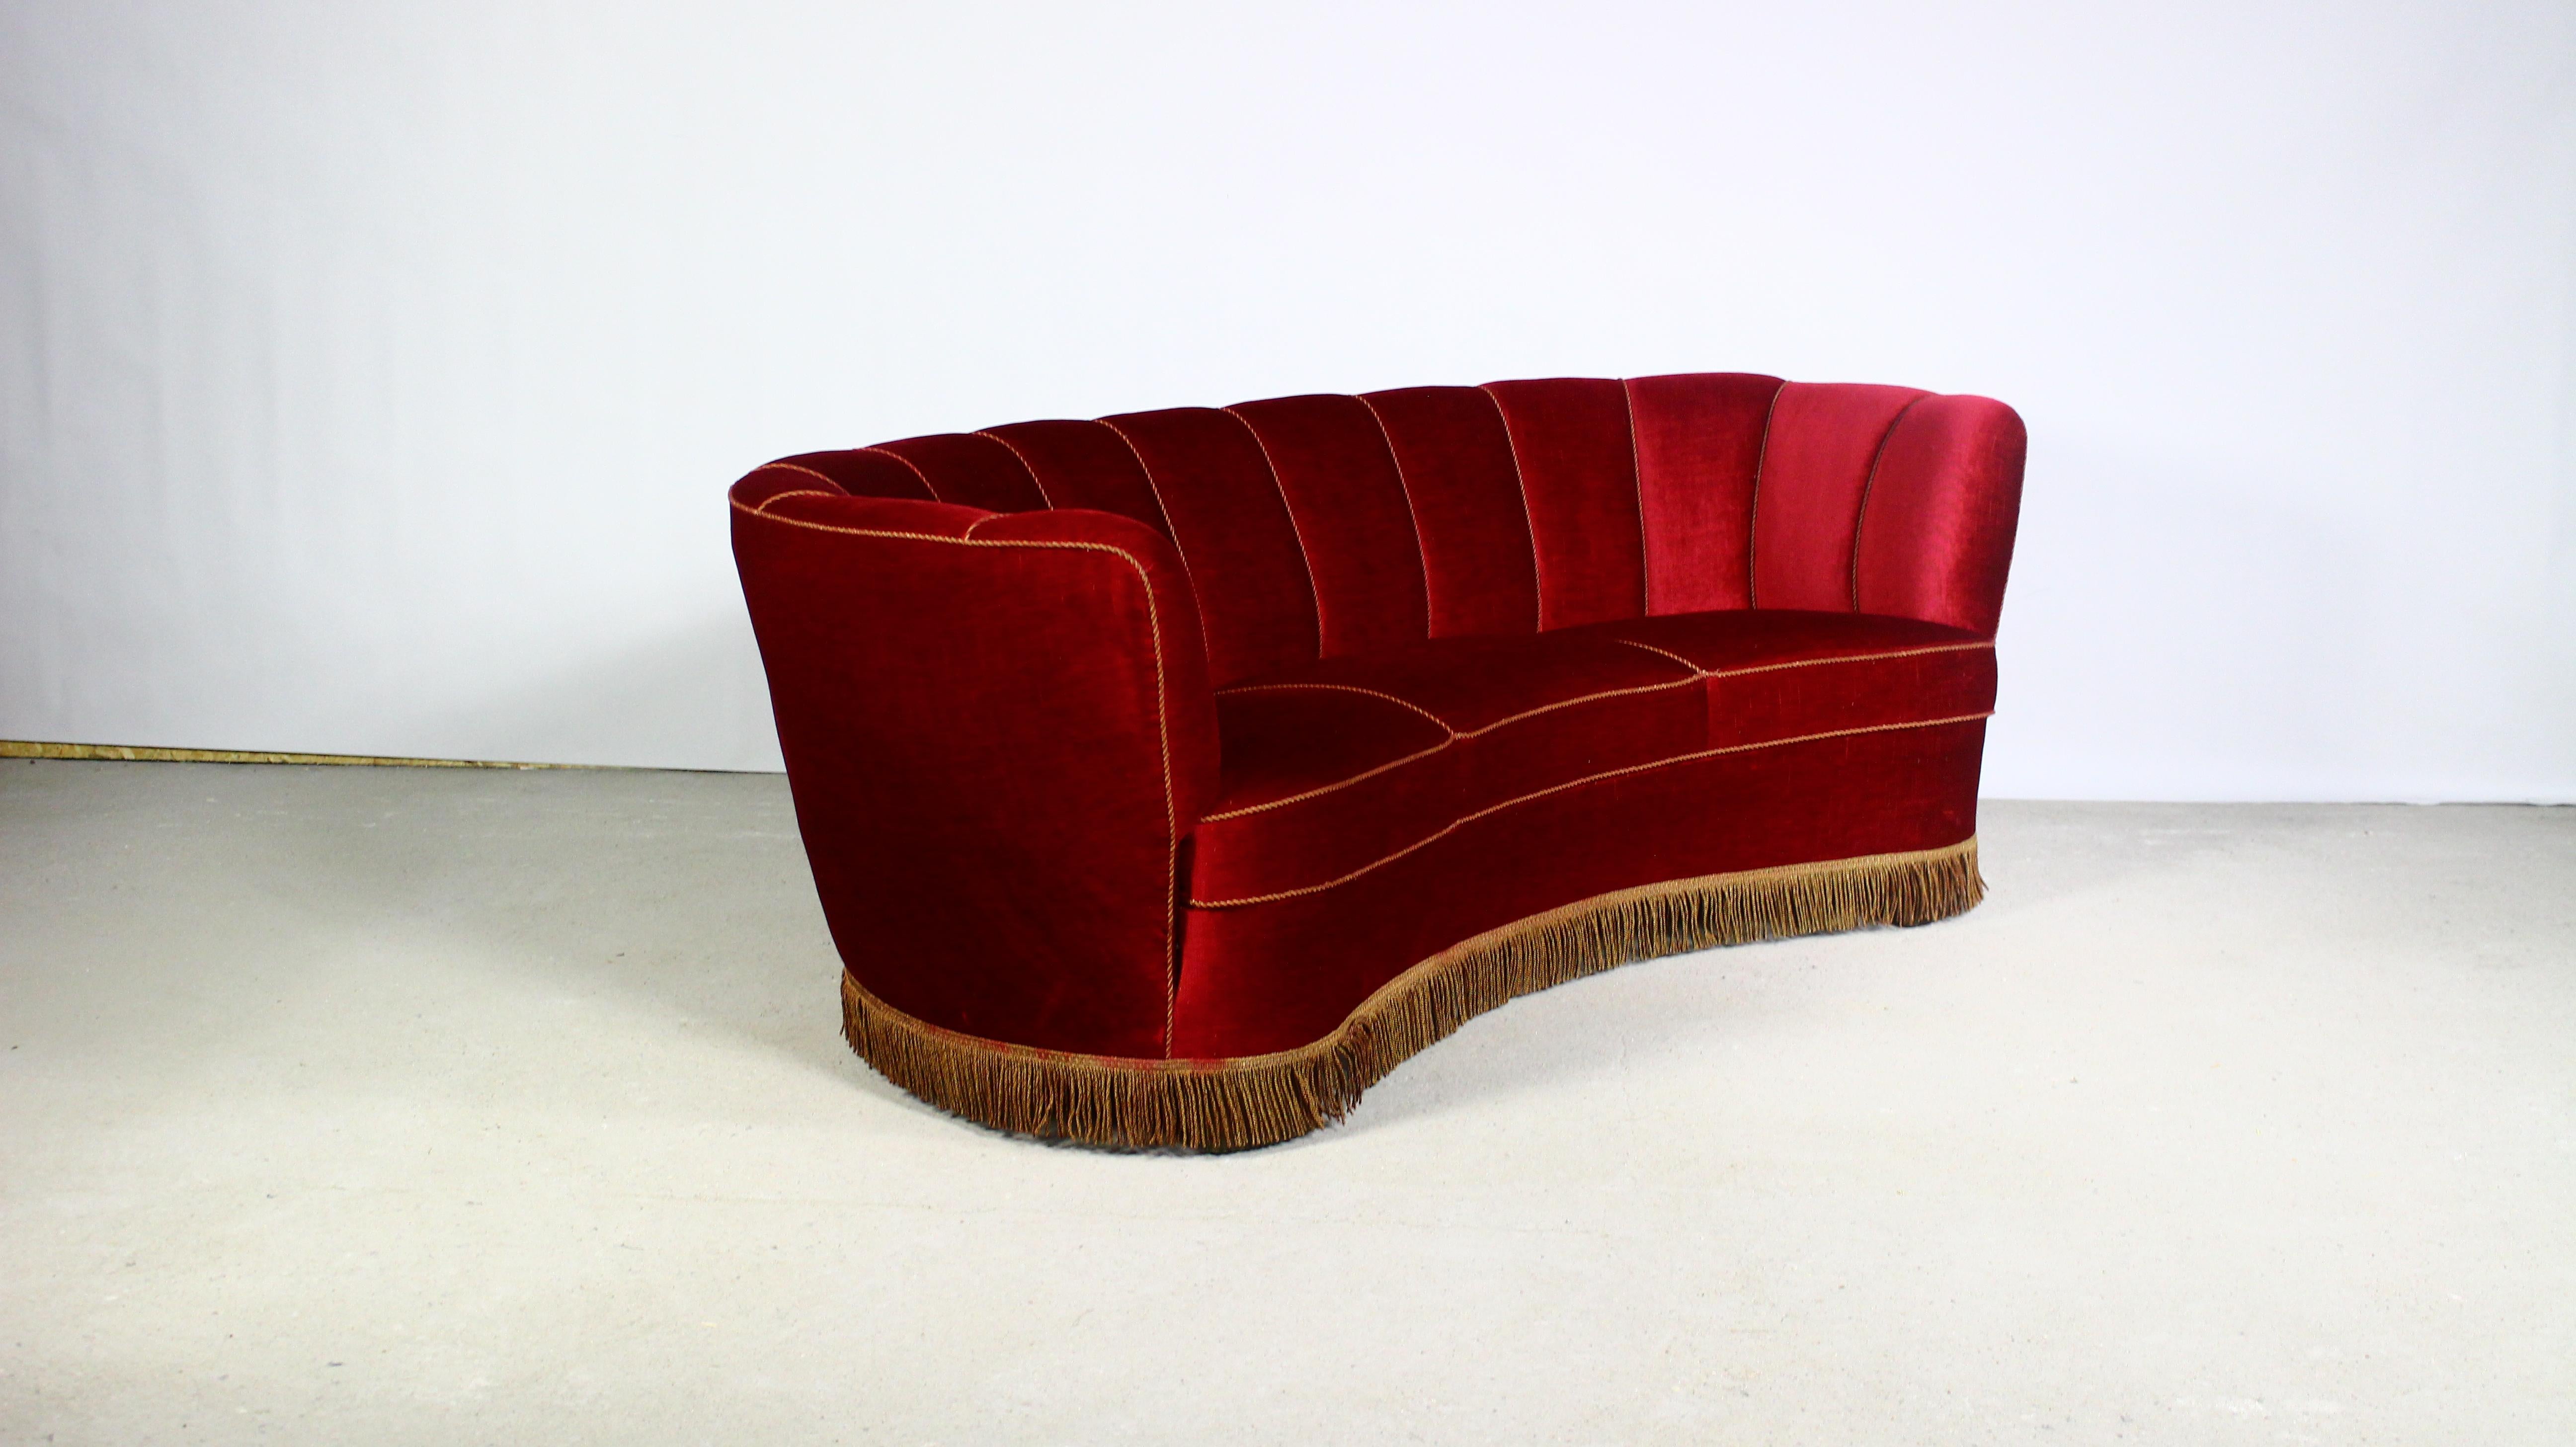 Canapé Banane danois Art Déco des années 1940.
Ce magnifique canapé trois places rappelle le style Art déco des années 1930 avec la touche reconnaissable du modernisme danois.
Grâce à sa forme élégamment incurvée,
ce type de canapé est souvent